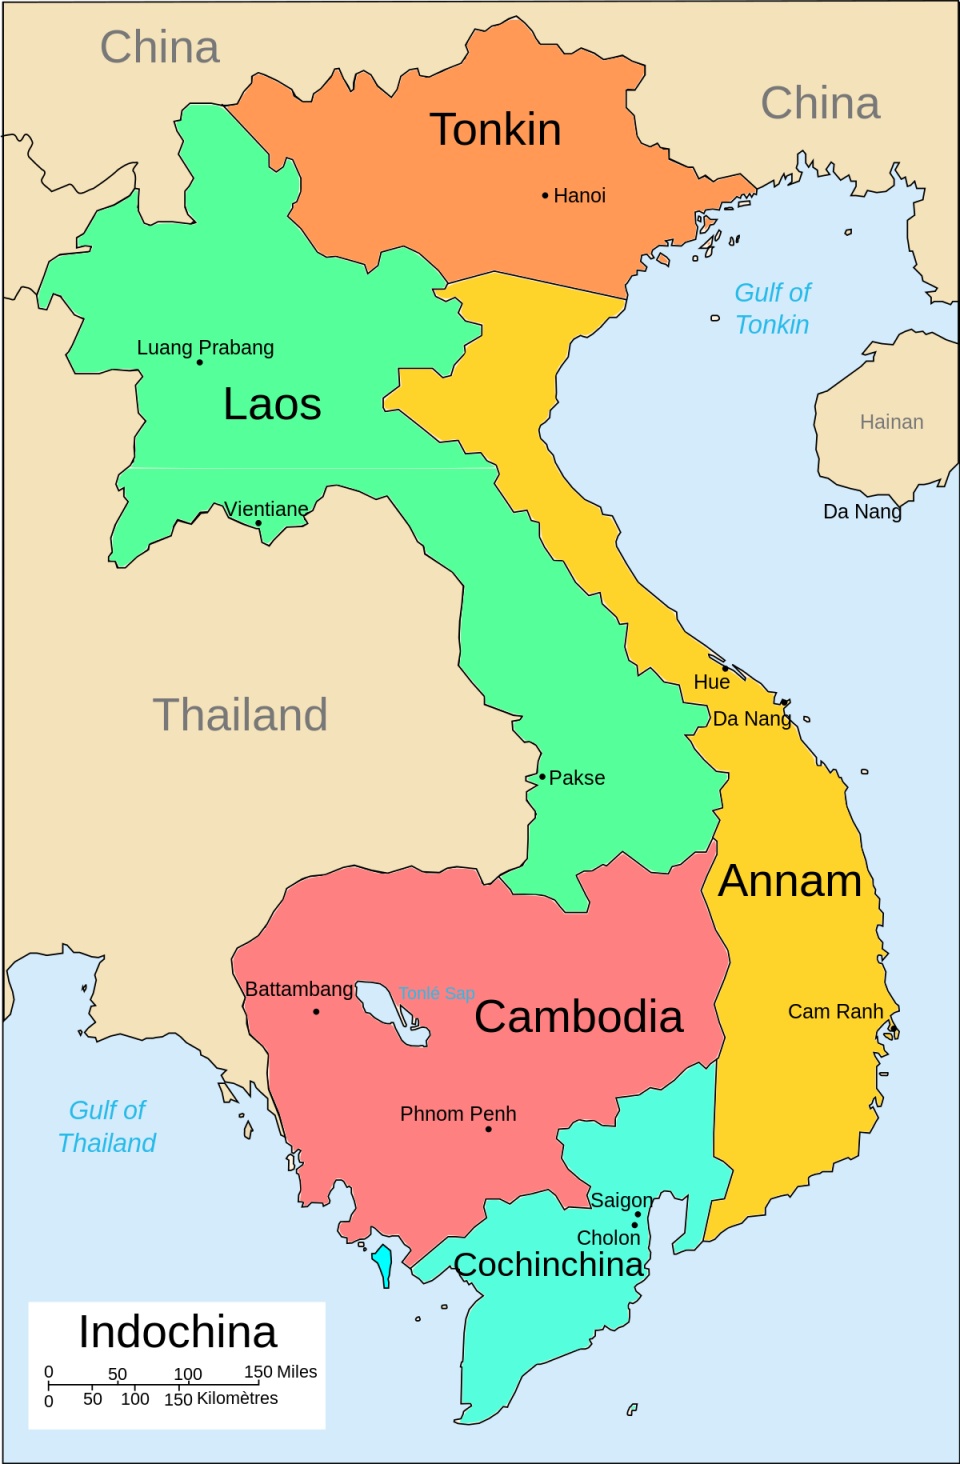 越南老挝柬埔寨曾是法国殖民地越南曾计划吞并两国图片